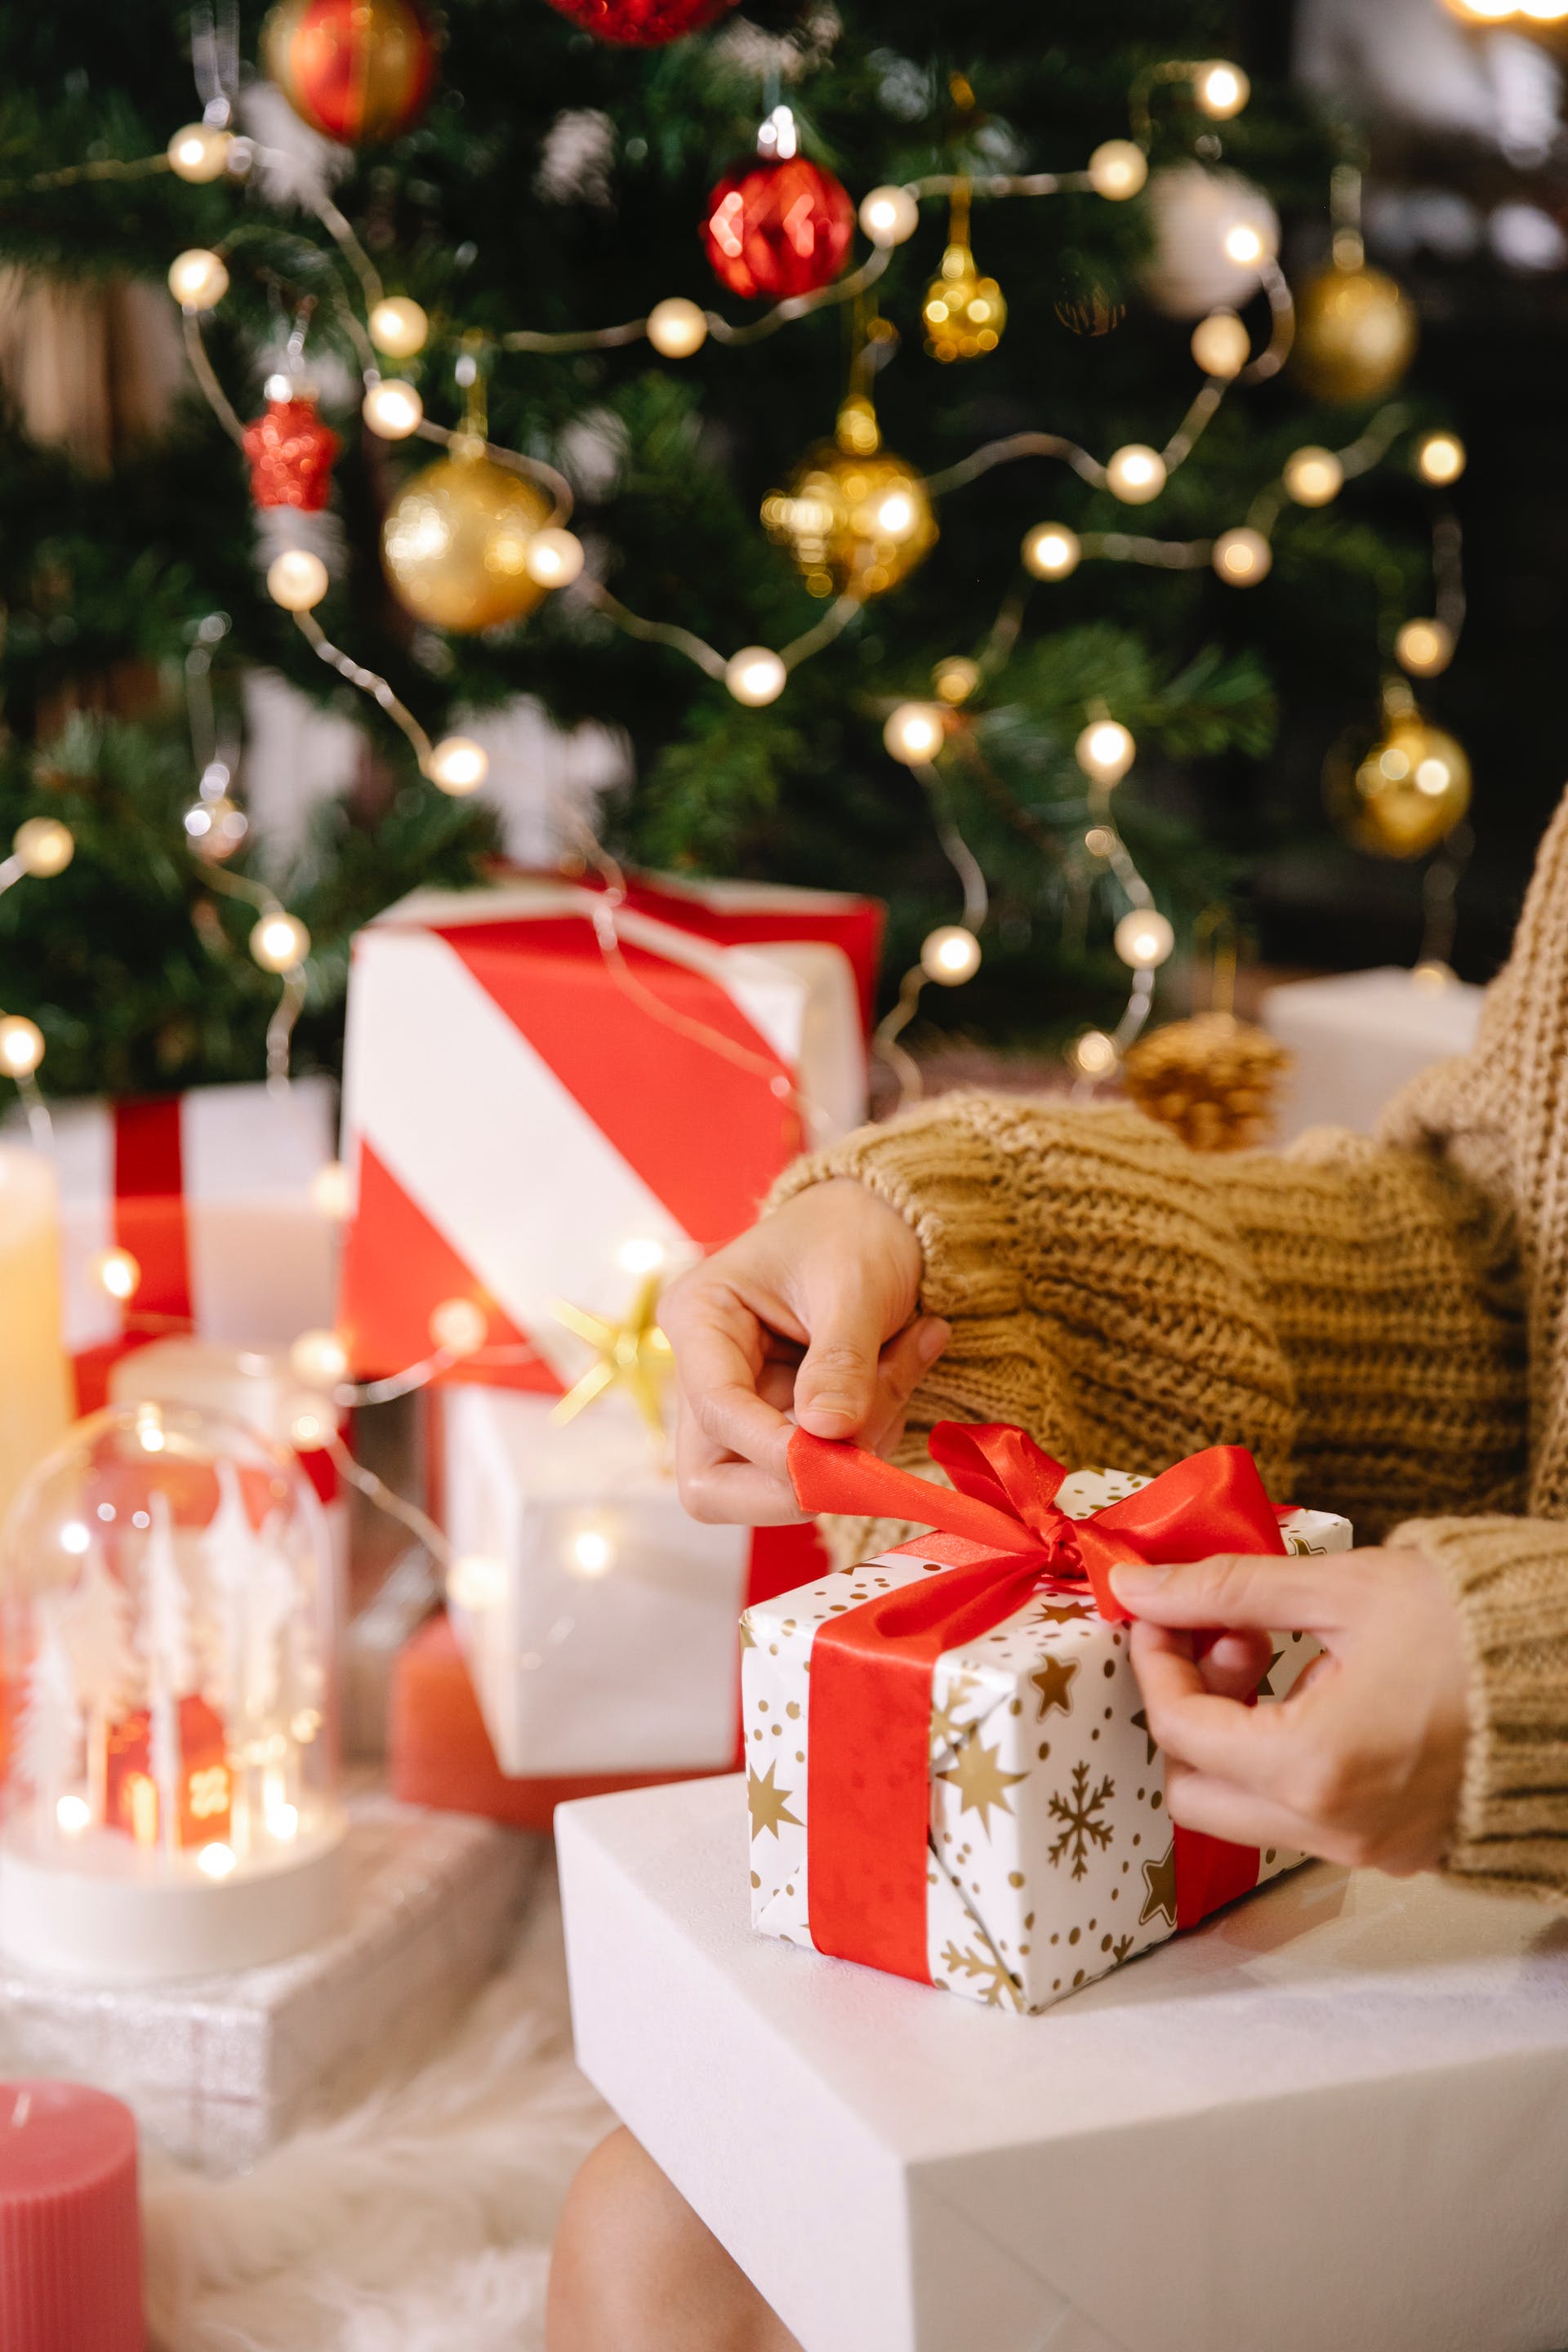 Eine Frau packt ein Geschenkpaket in der Nähe eines Weihnachtsbaums ein | Quelle: Pexels